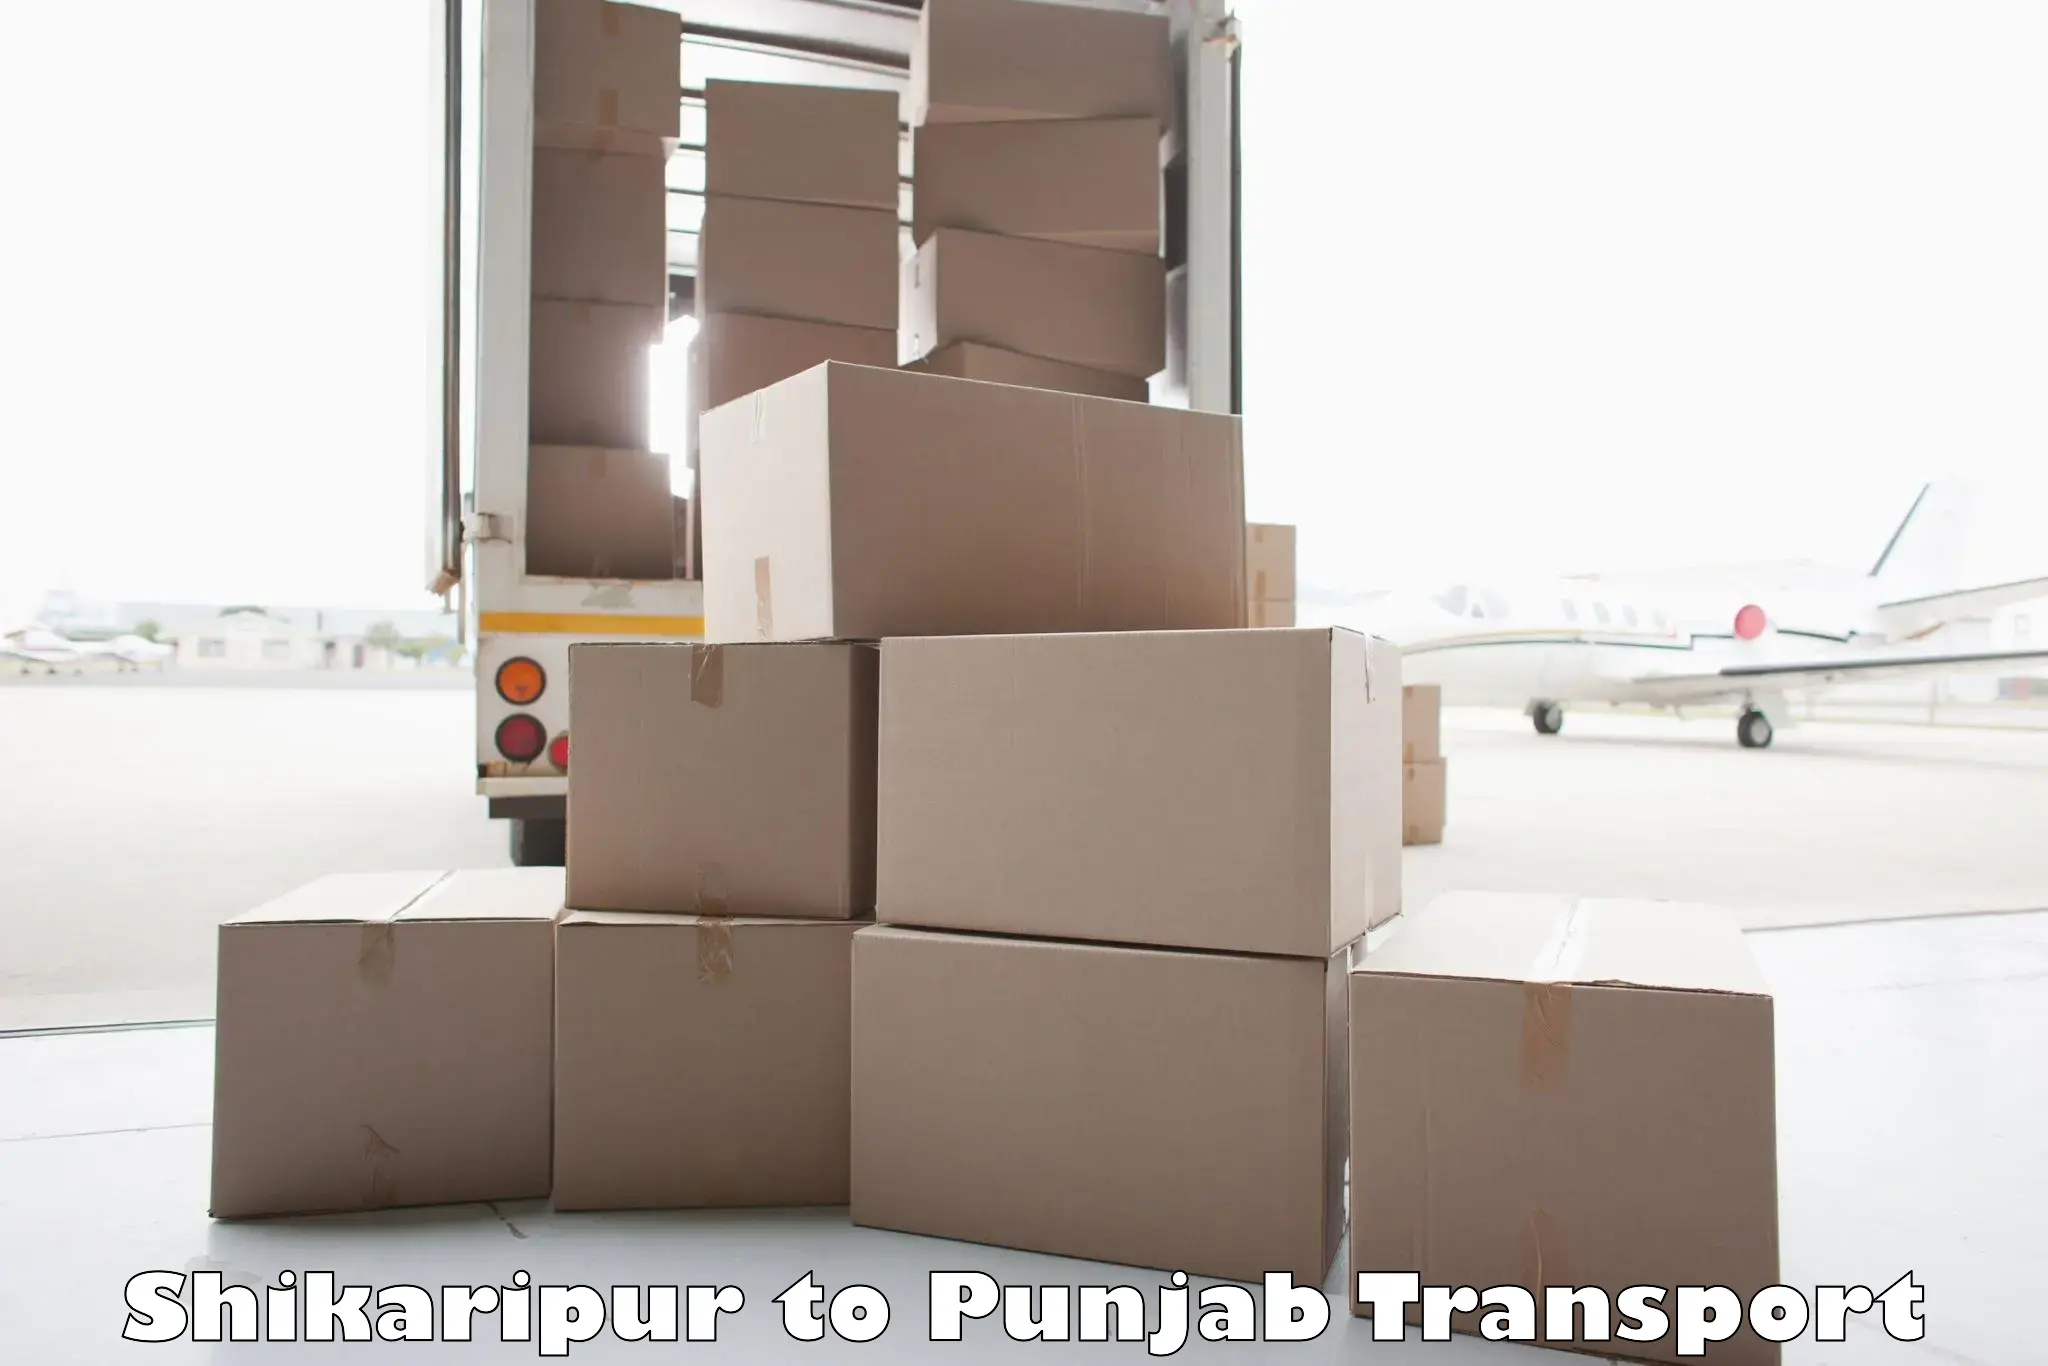 Shipping partner Shikaripur to Goindwal Sahib